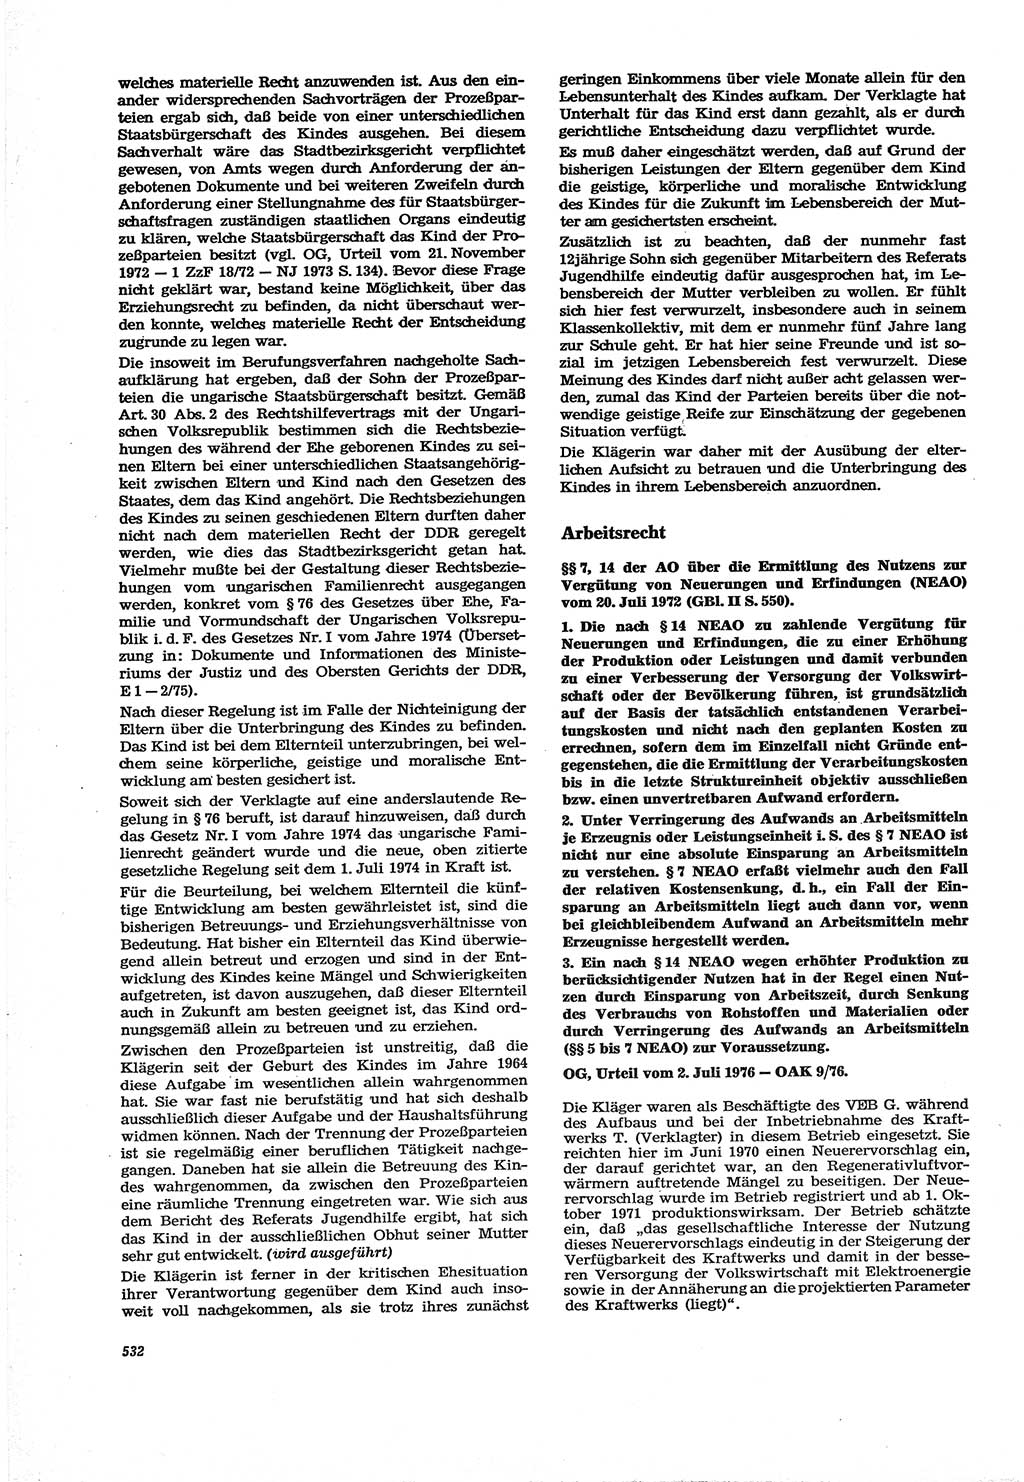 Neue Justiz (NJ), Zeitschrift für Recht und Rechtswissenschaft [Deutsche Demokratische Republik (DDR)], 30. Jahrgang 1976, Seite 532 (NJ DDR 1976, S. 532)